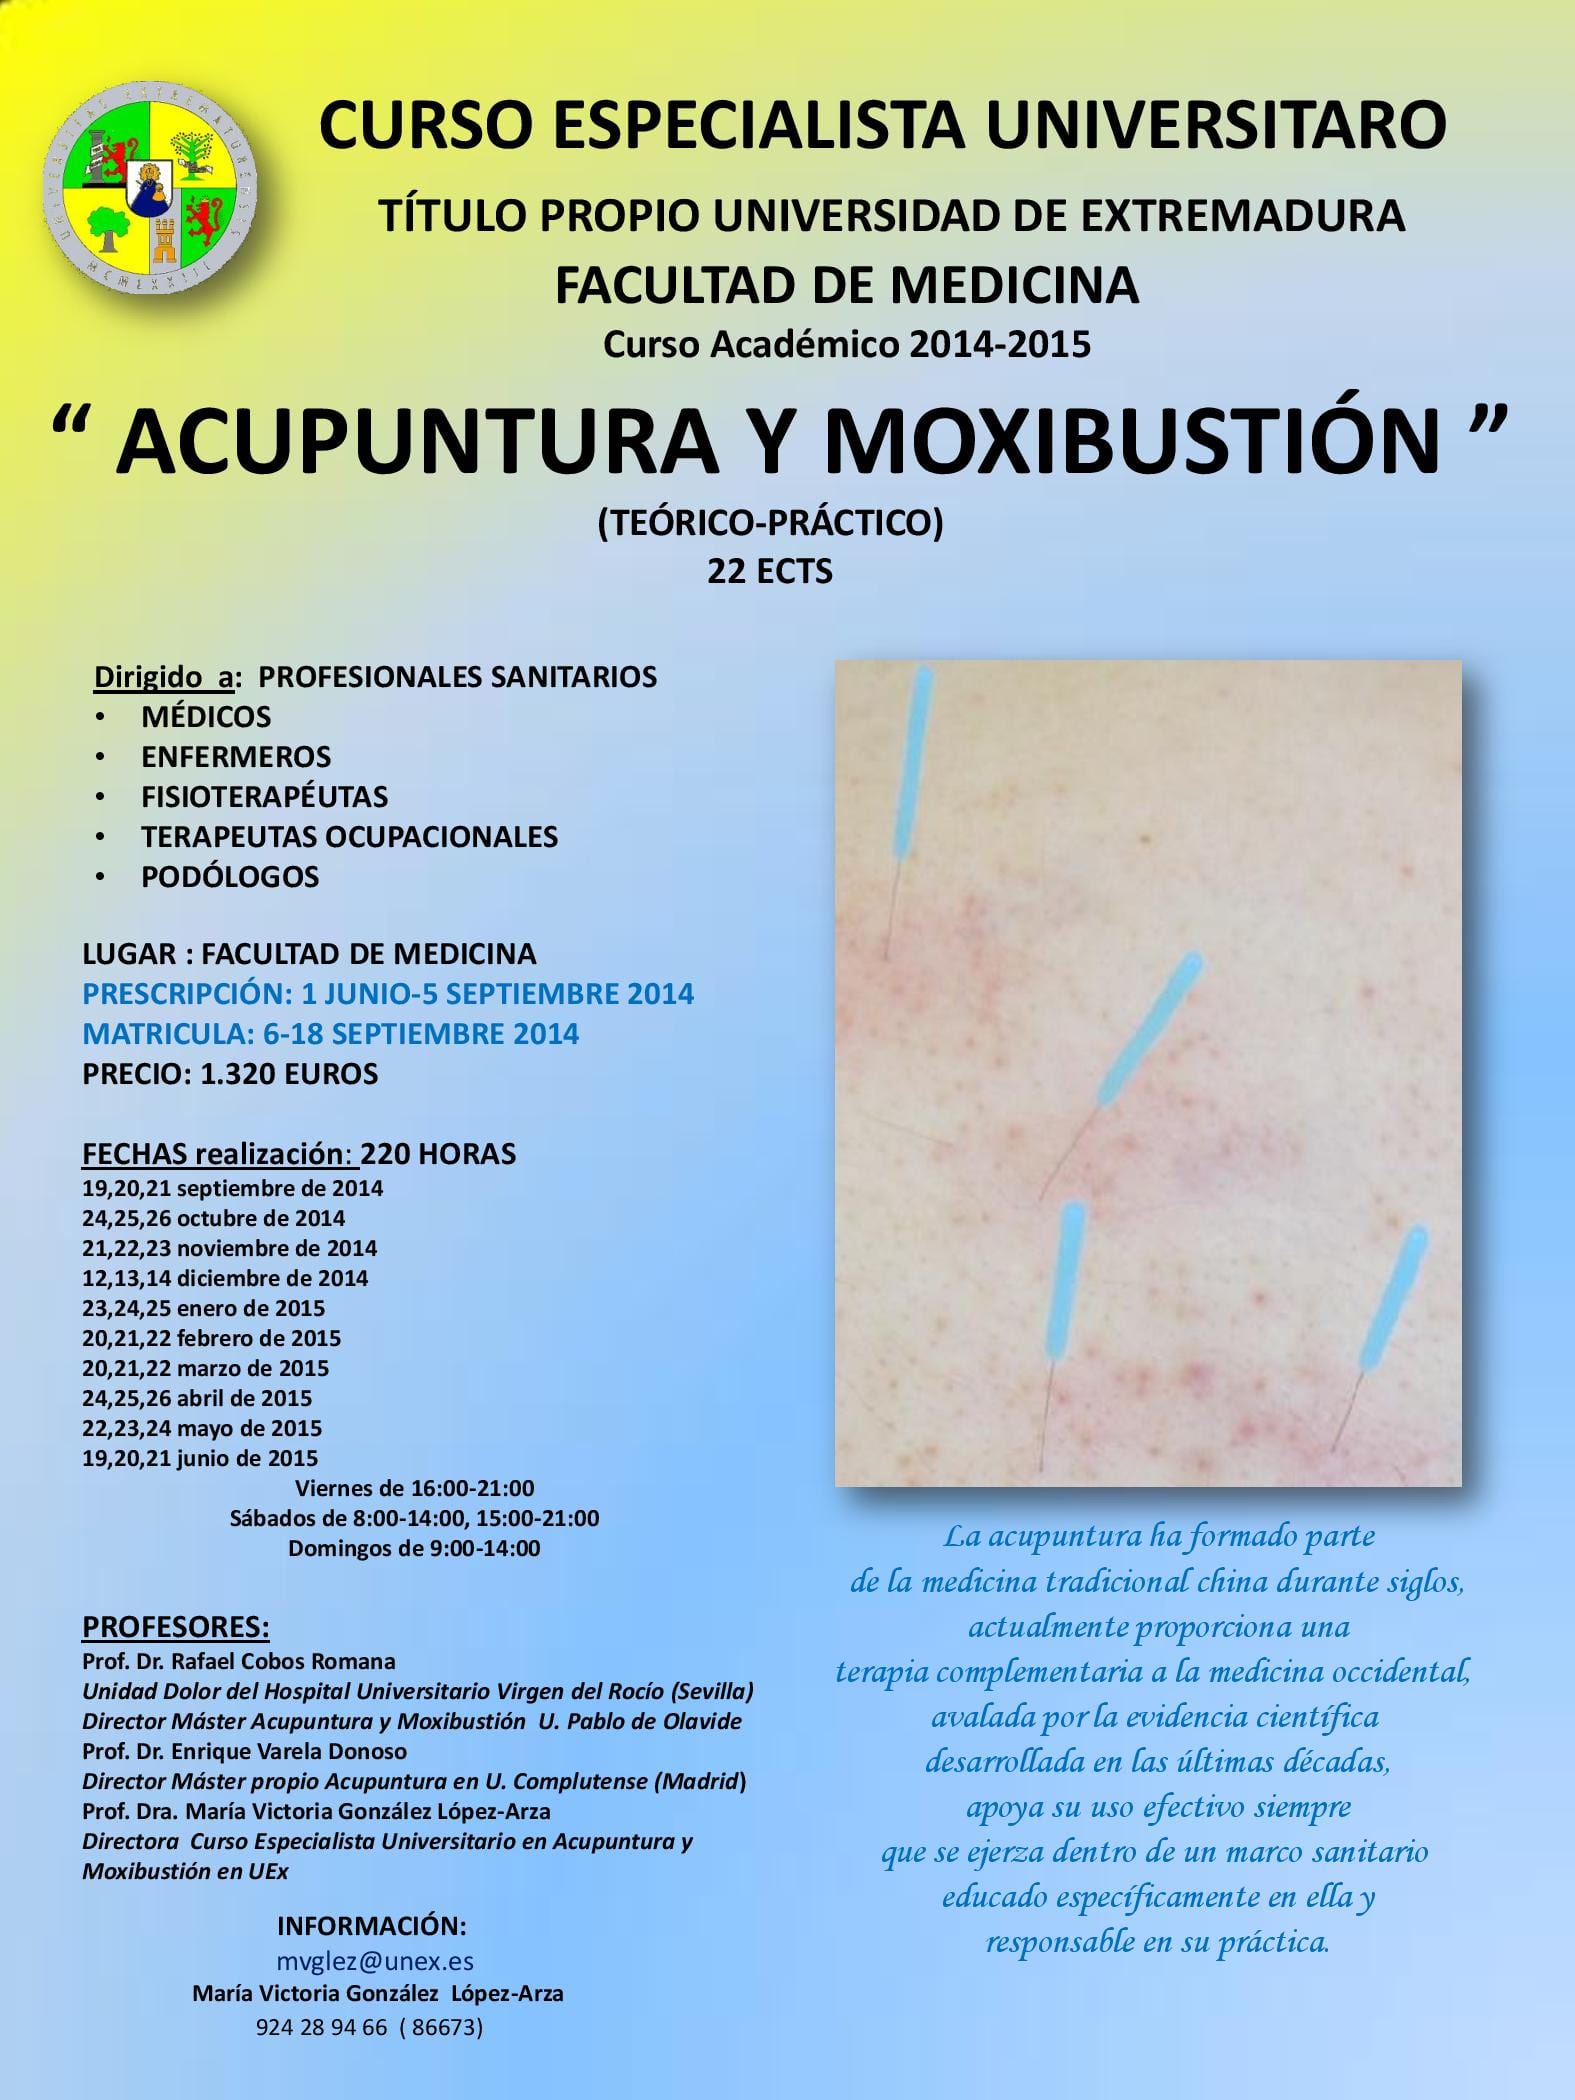 Cartel del curso de especialista en acupuntura y moxibustión de al Universidad de Extremadura.